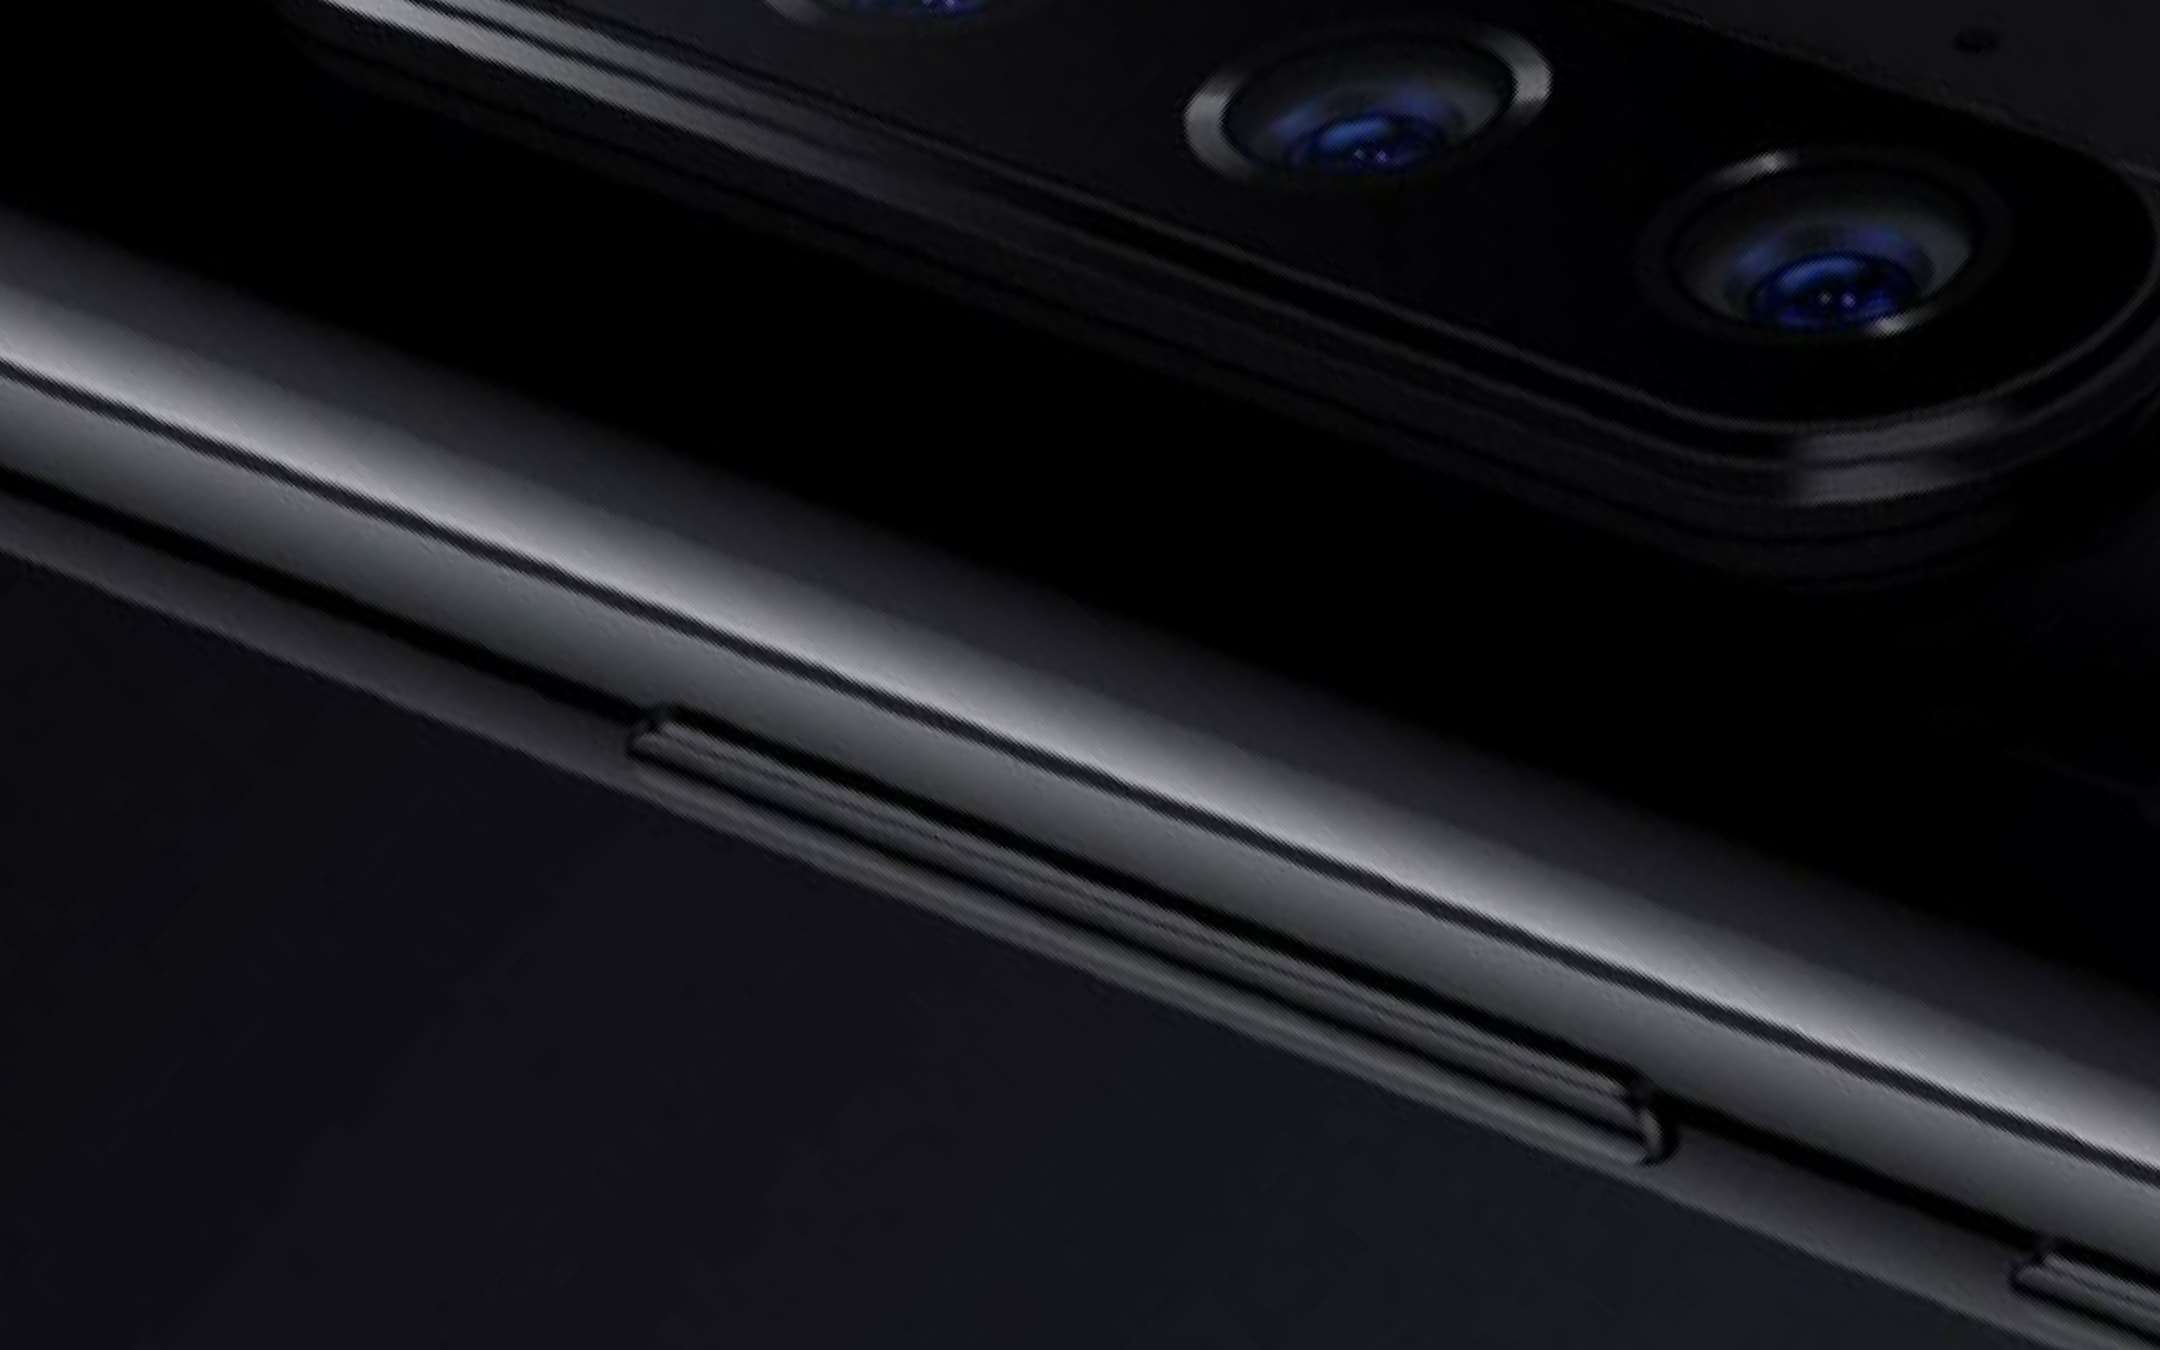 Xiaomi Mi 9 novità: 12GB di RAM, prezzi trapelati